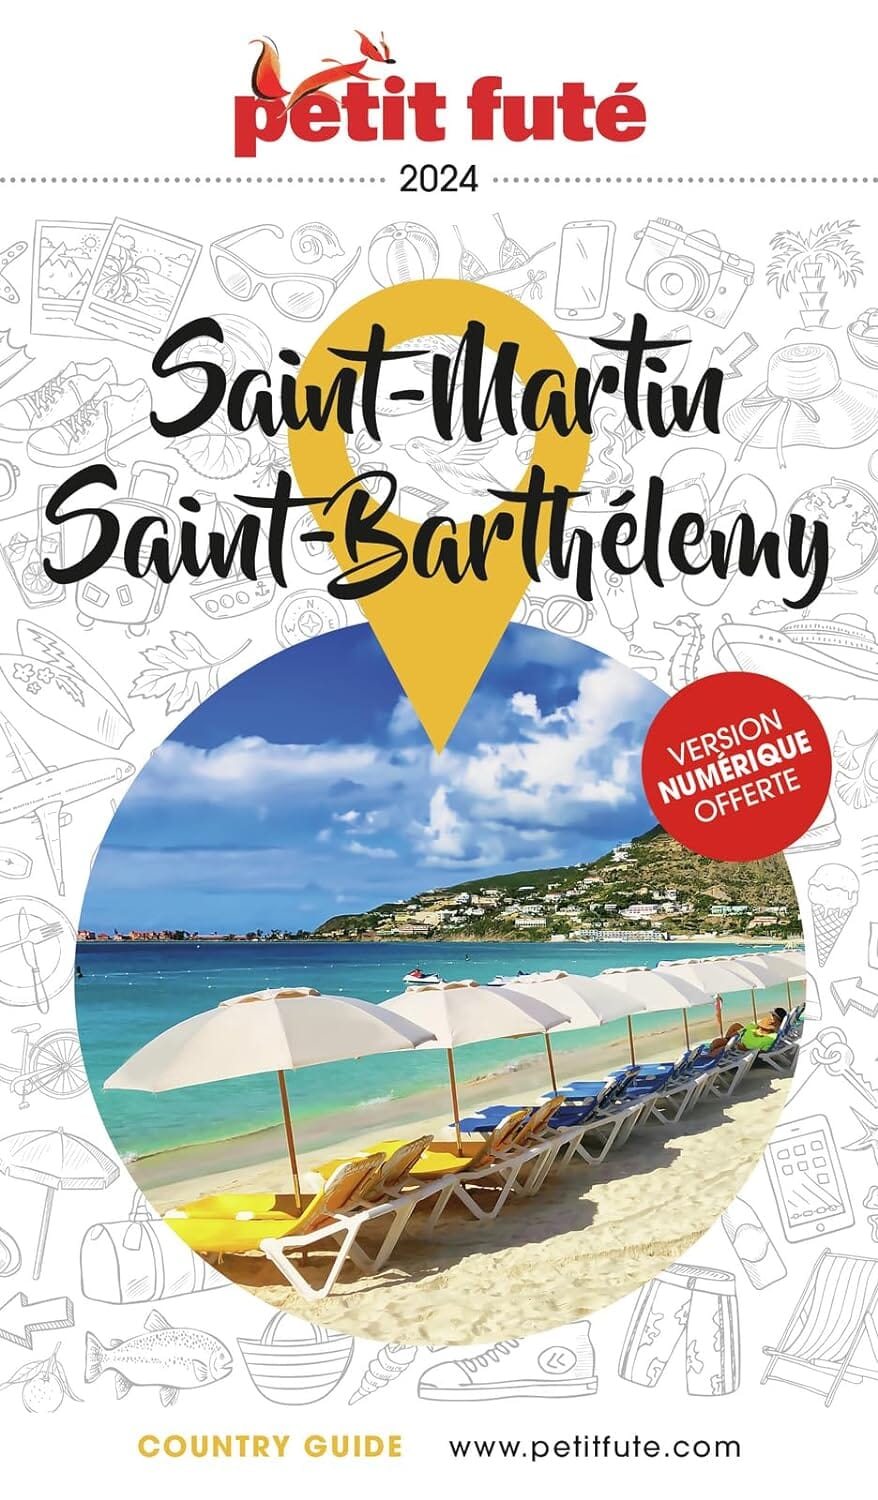 Guide de voyage - Saint-Martin, Saint-Barthélémy 2024 | Petit Futé guide de voyage Petit Futé 